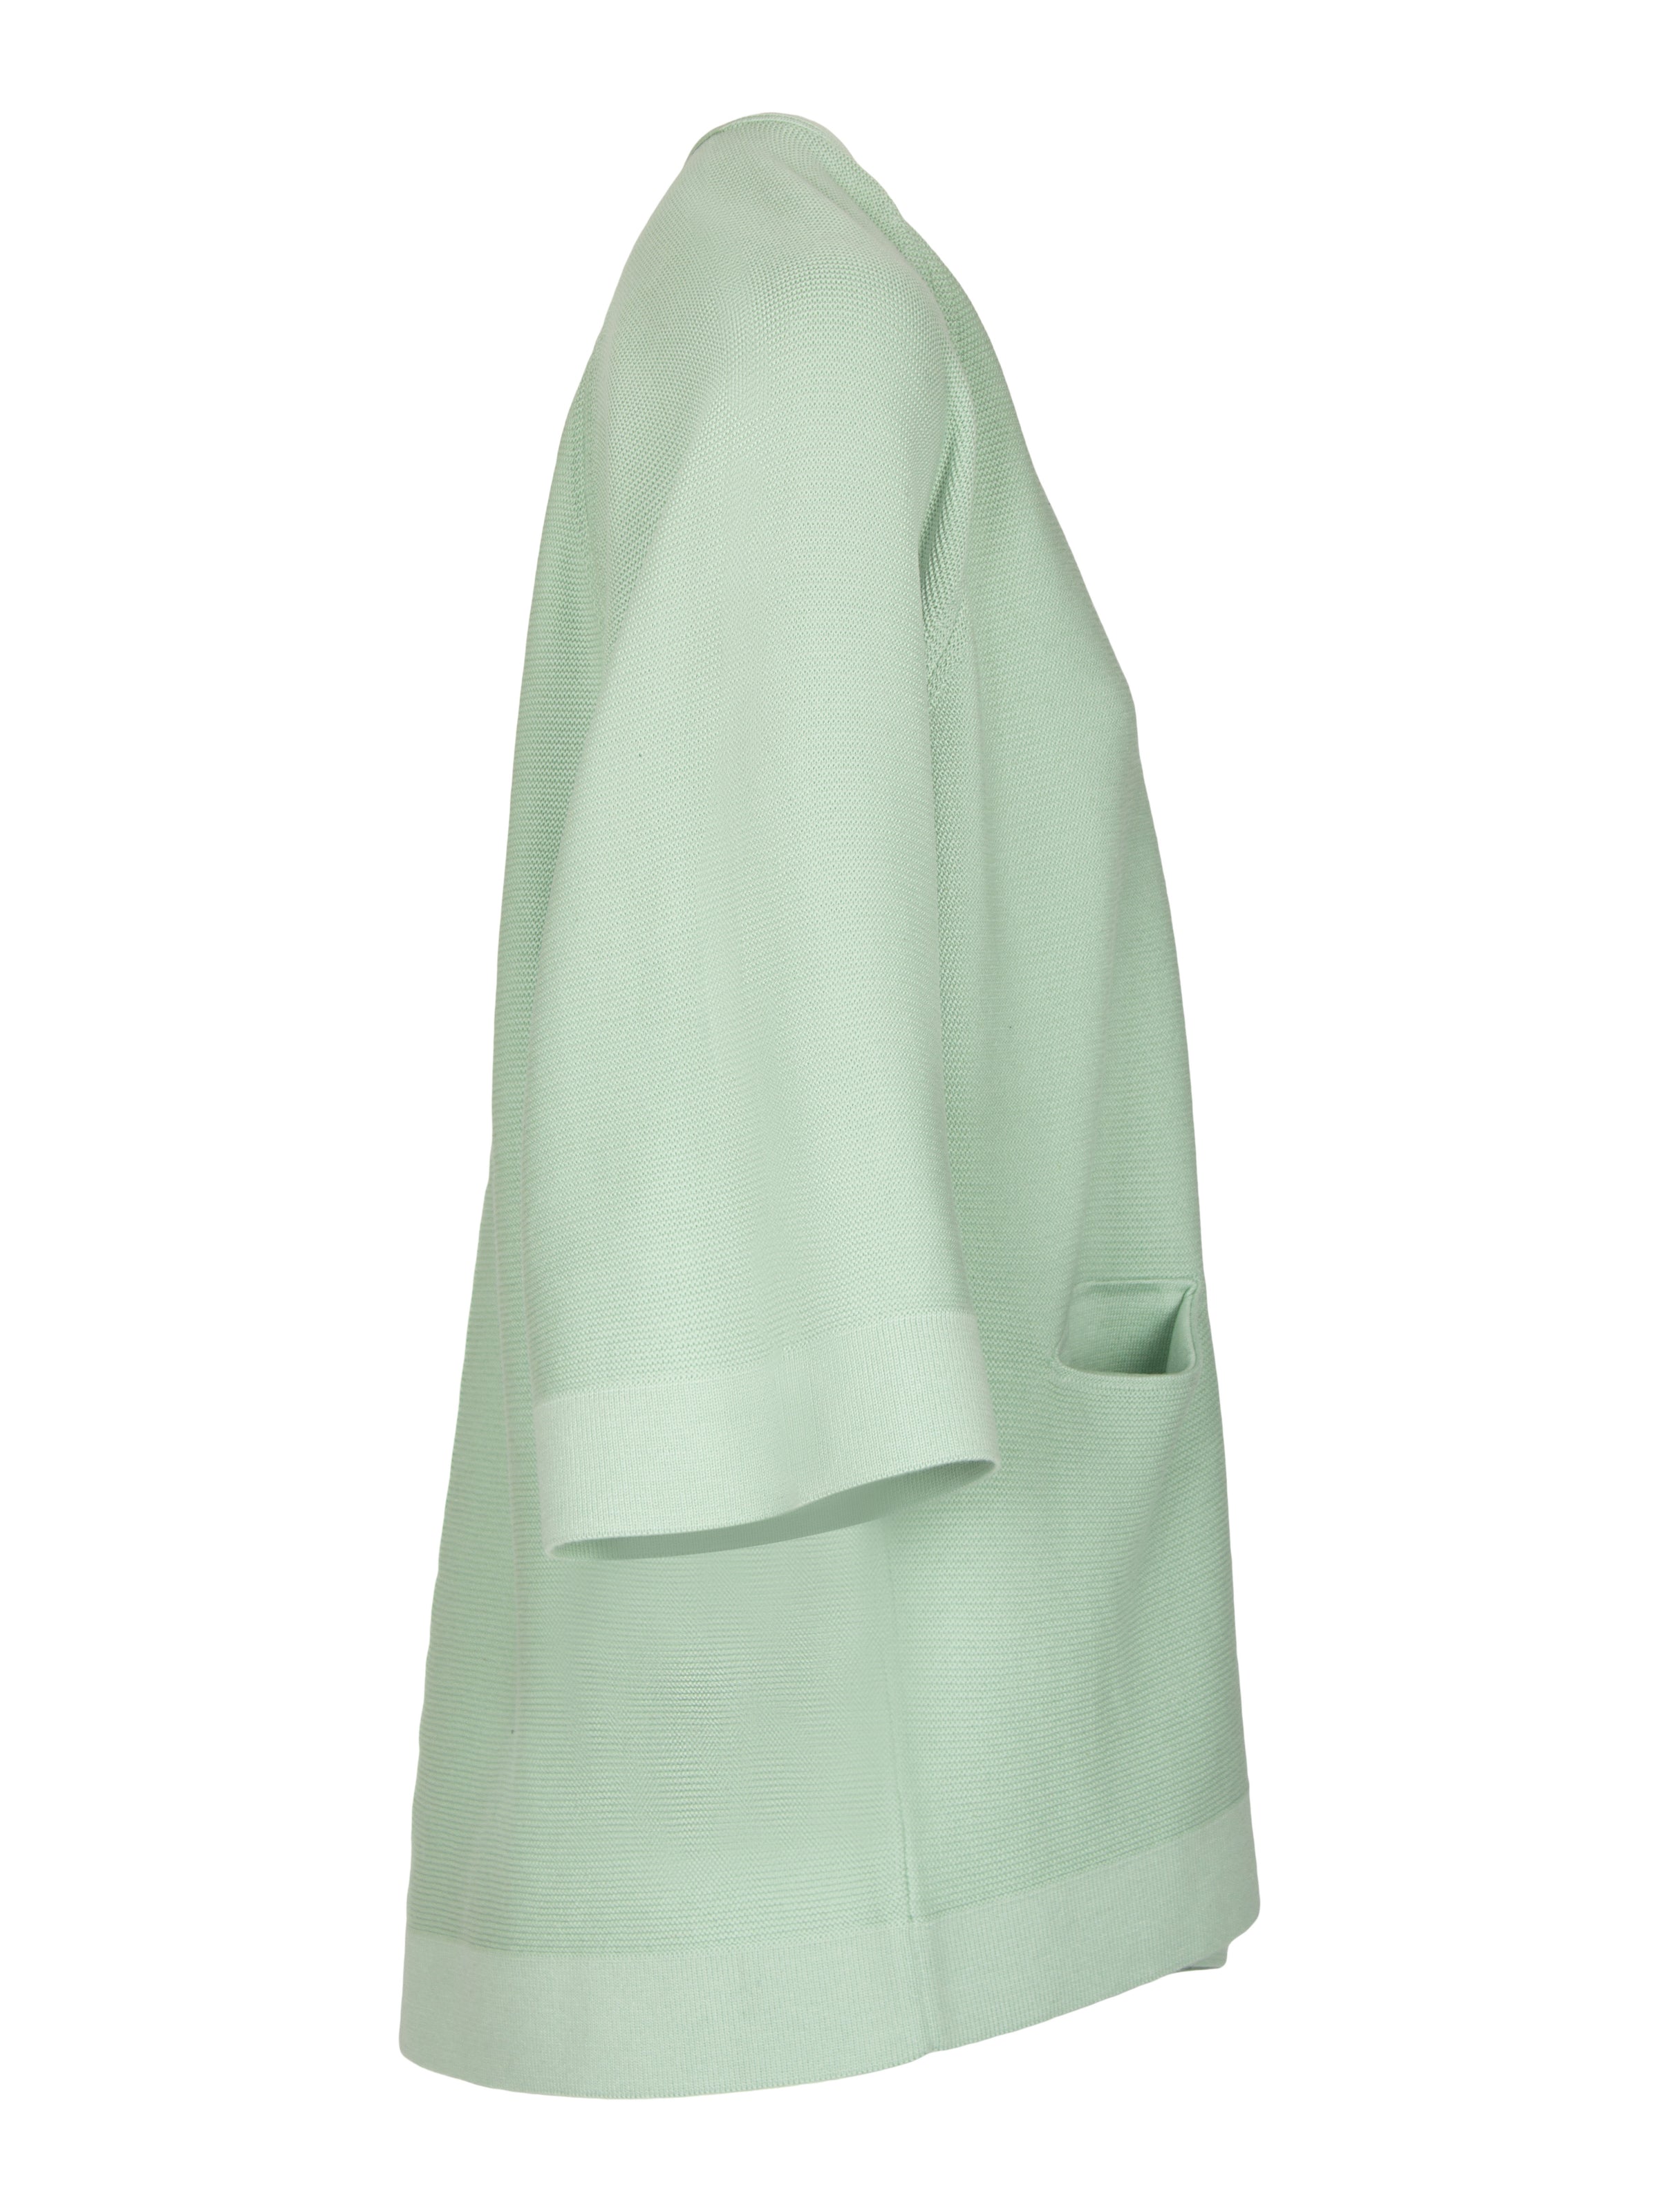 LeComte lang gebreid vest in pastel groen bij DRESSYOURPARENTS kleding voor moderne oudere dames